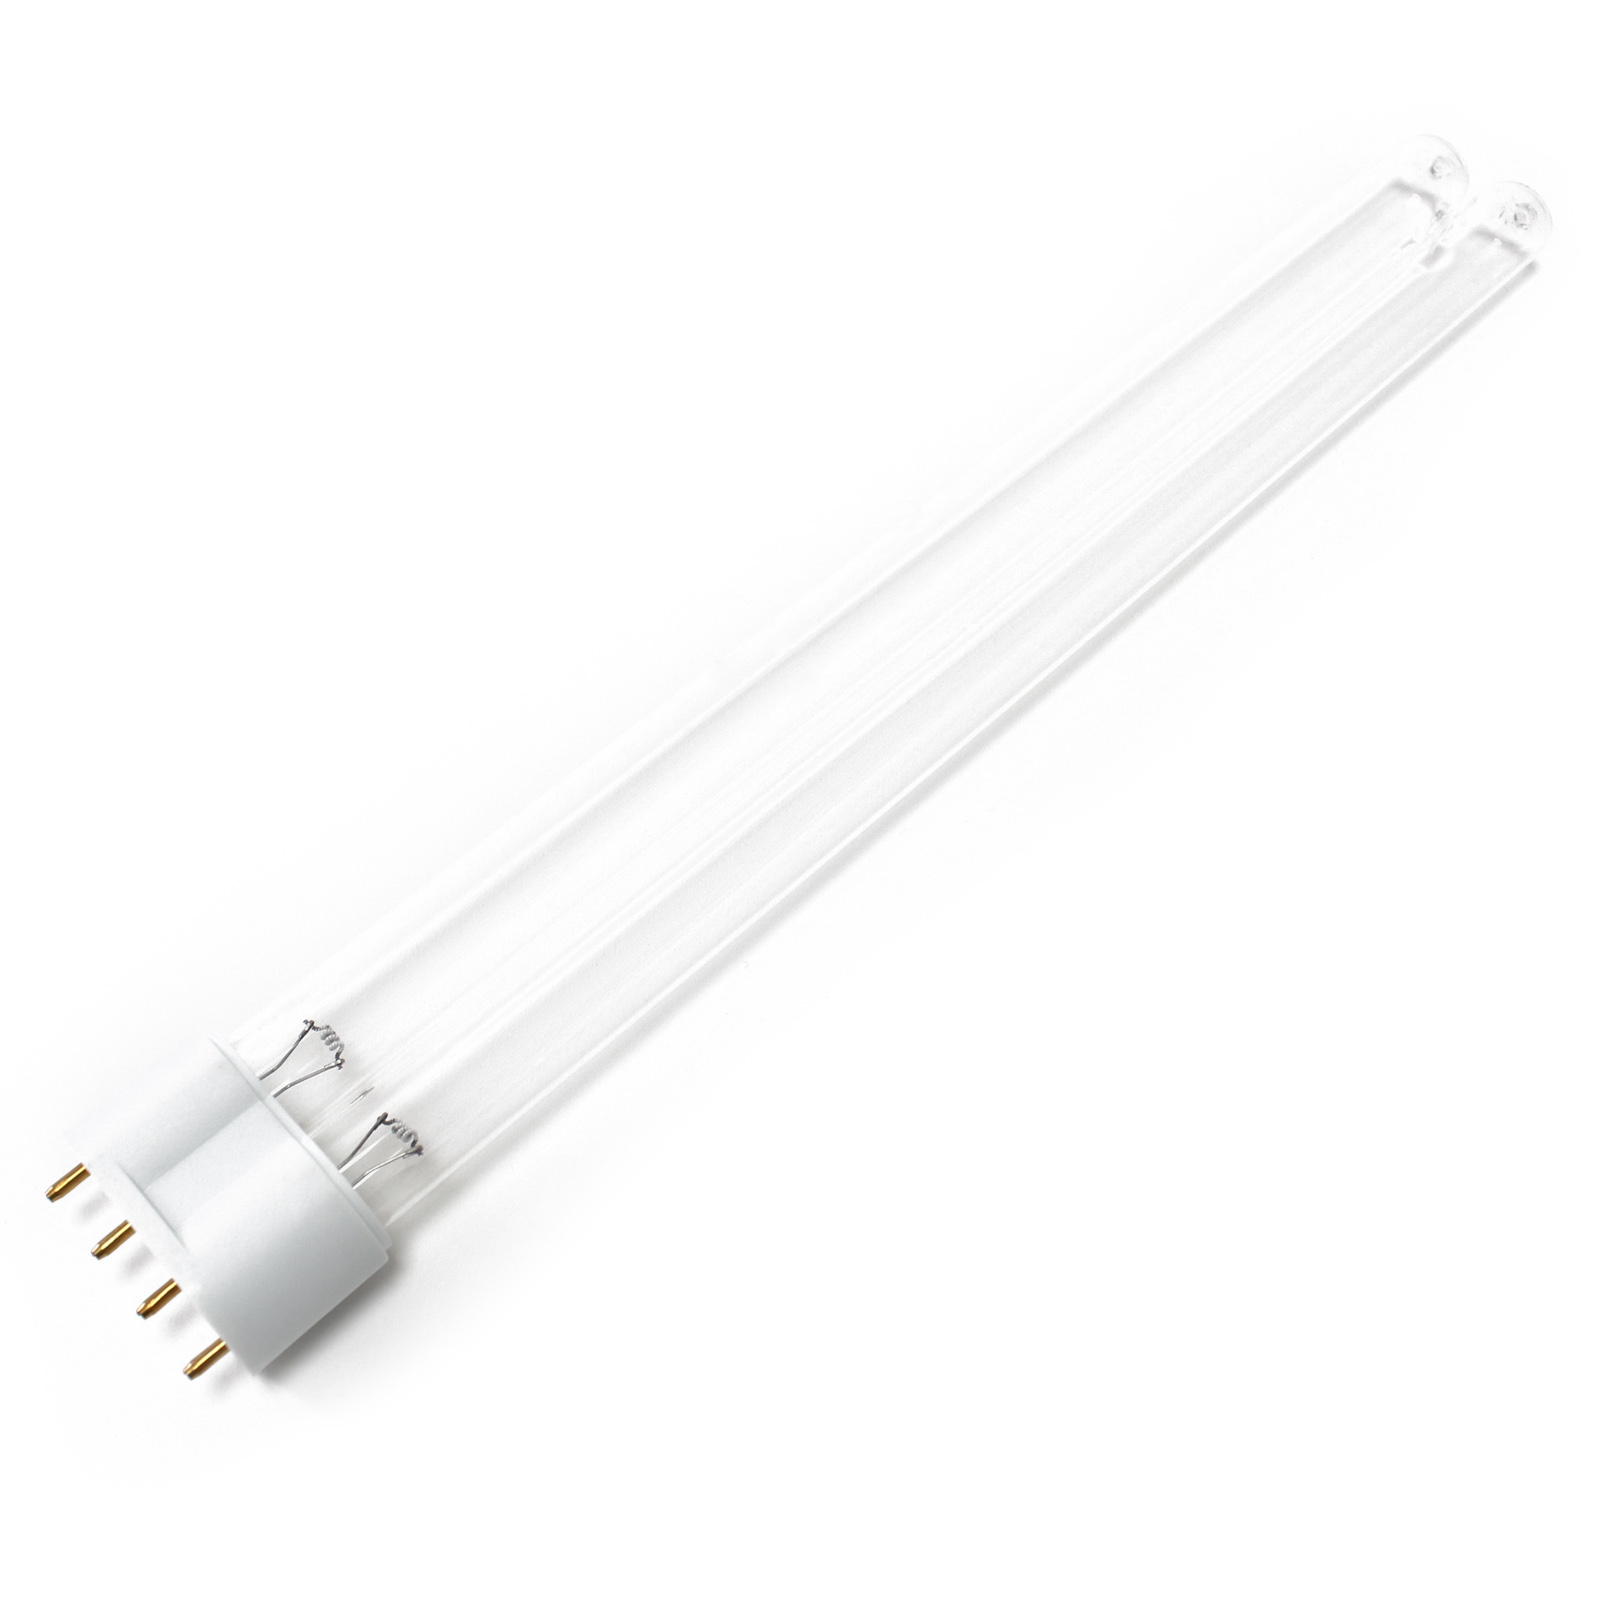 CUV-224 UV-C Lampe Röhre 24W Teich-Klärer UVC Leuchtmittel